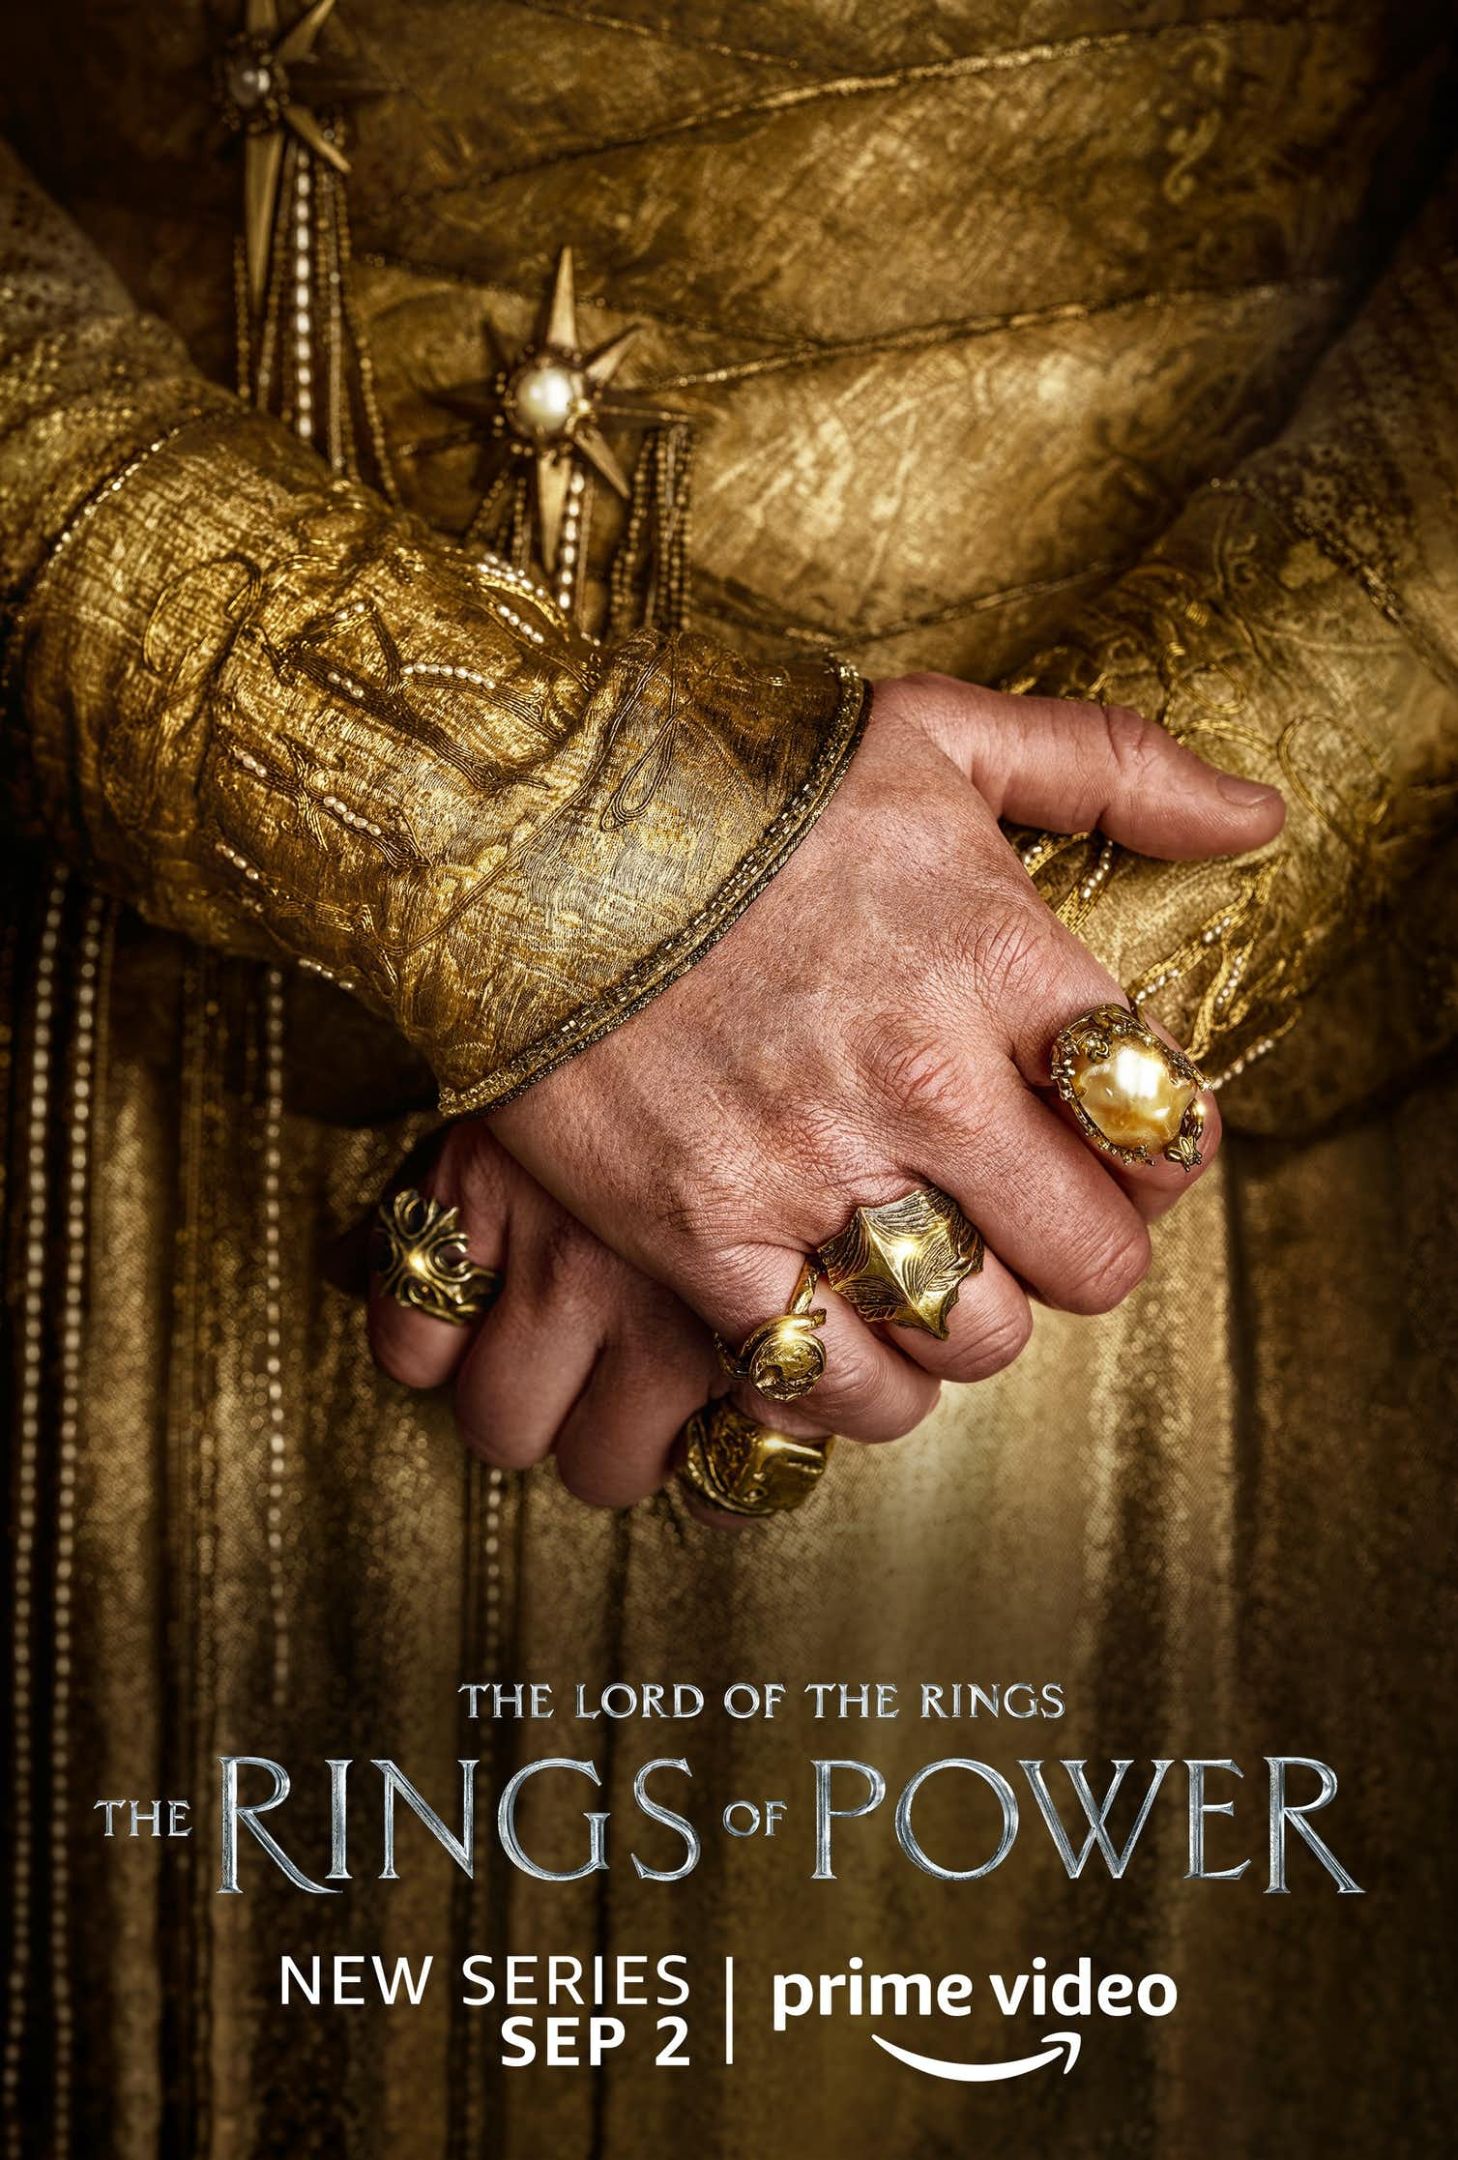 亚马逊的海报工作室即将到来的权力的戒指。有人穿着黄金折叠手手上的戒指可见